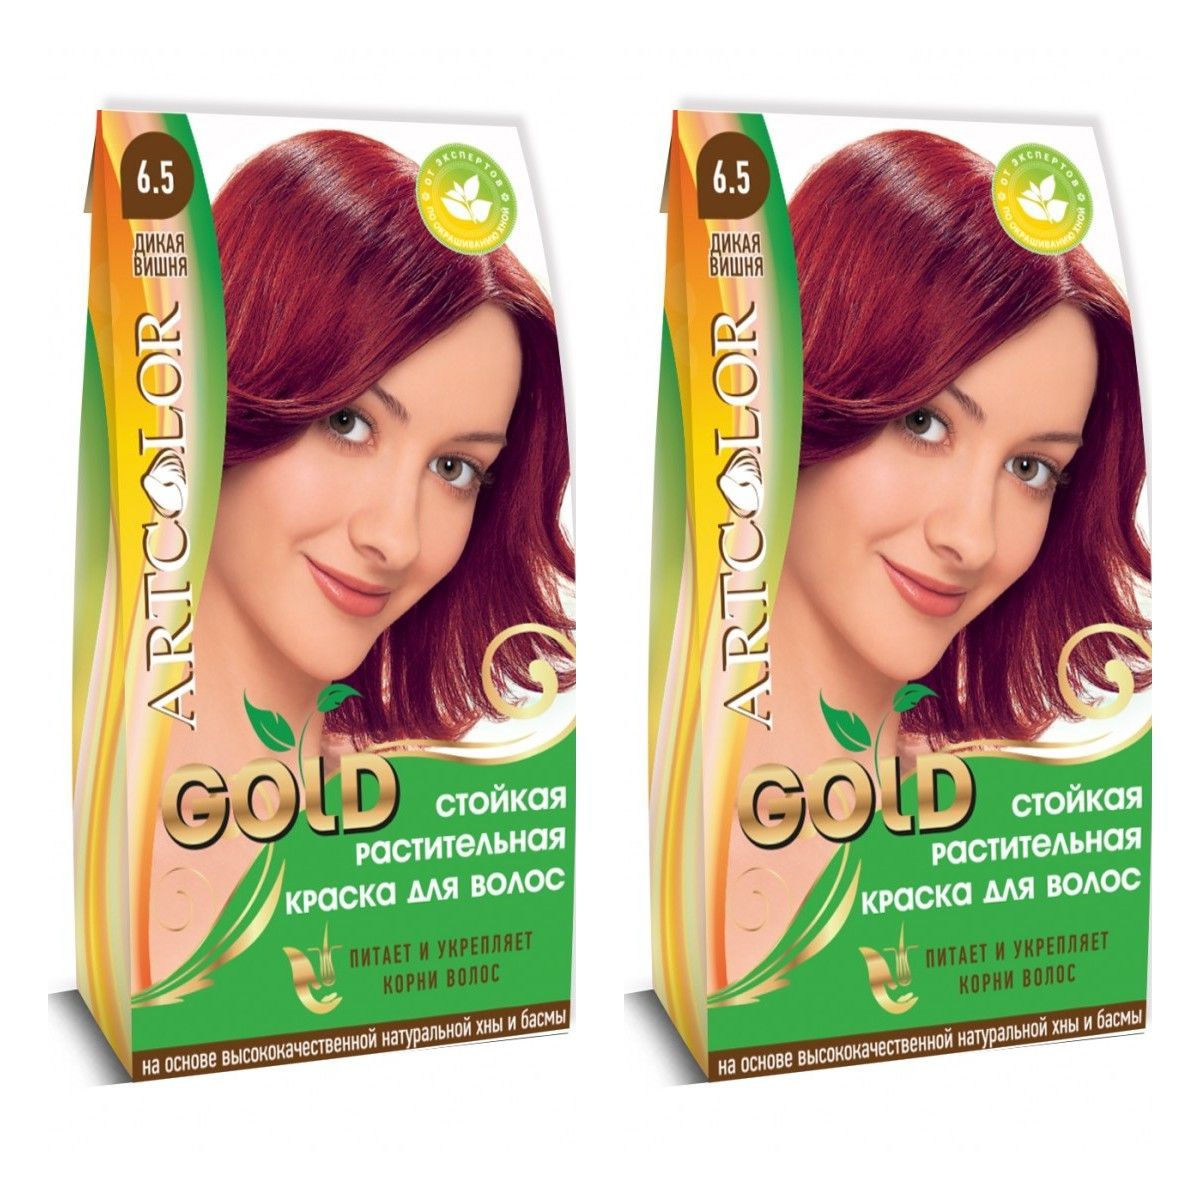 Растительная краска для волос. Растительная краска для волос Артколор. Раститительная краска Артколор Gold вишня 25гр. Краска для волос золото. Растительная краска для волос хна Артколор.